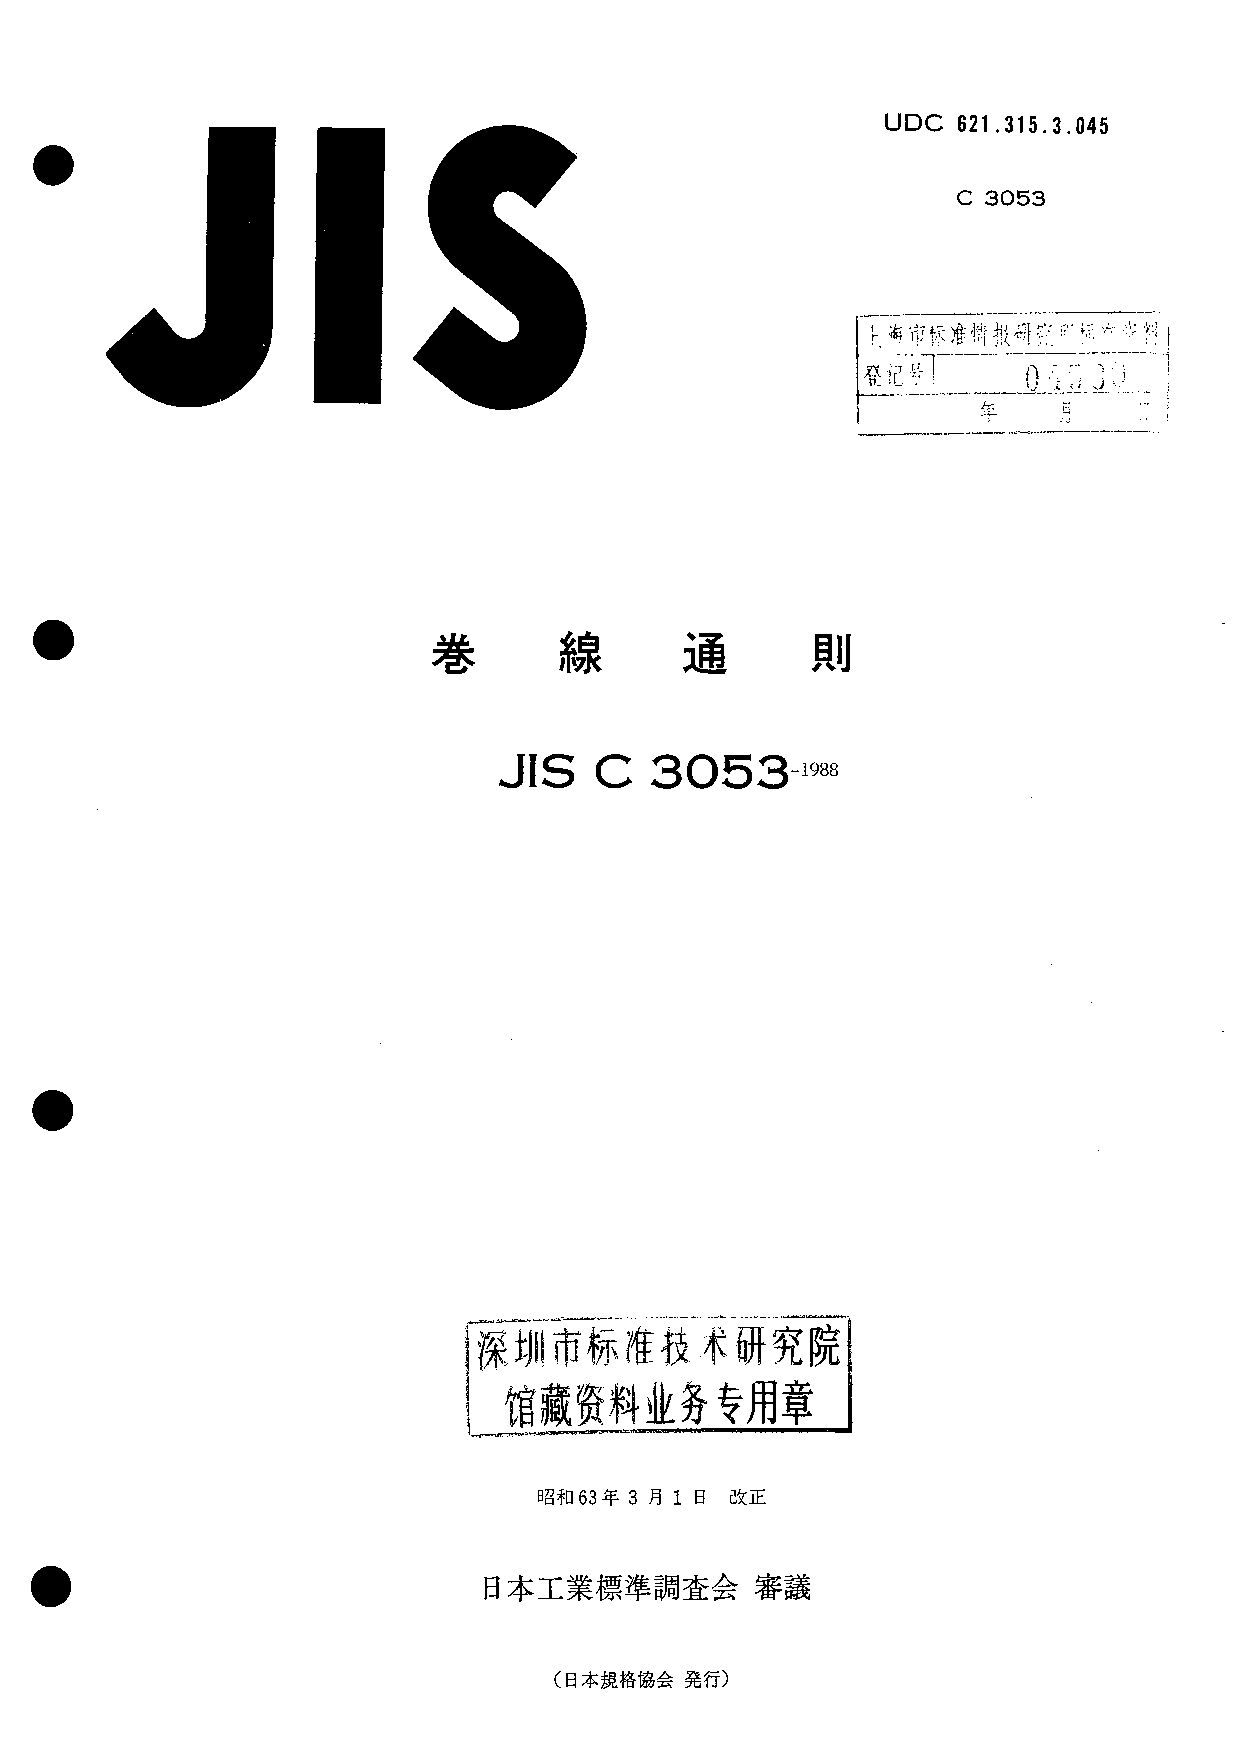 JIS C 3053:1988